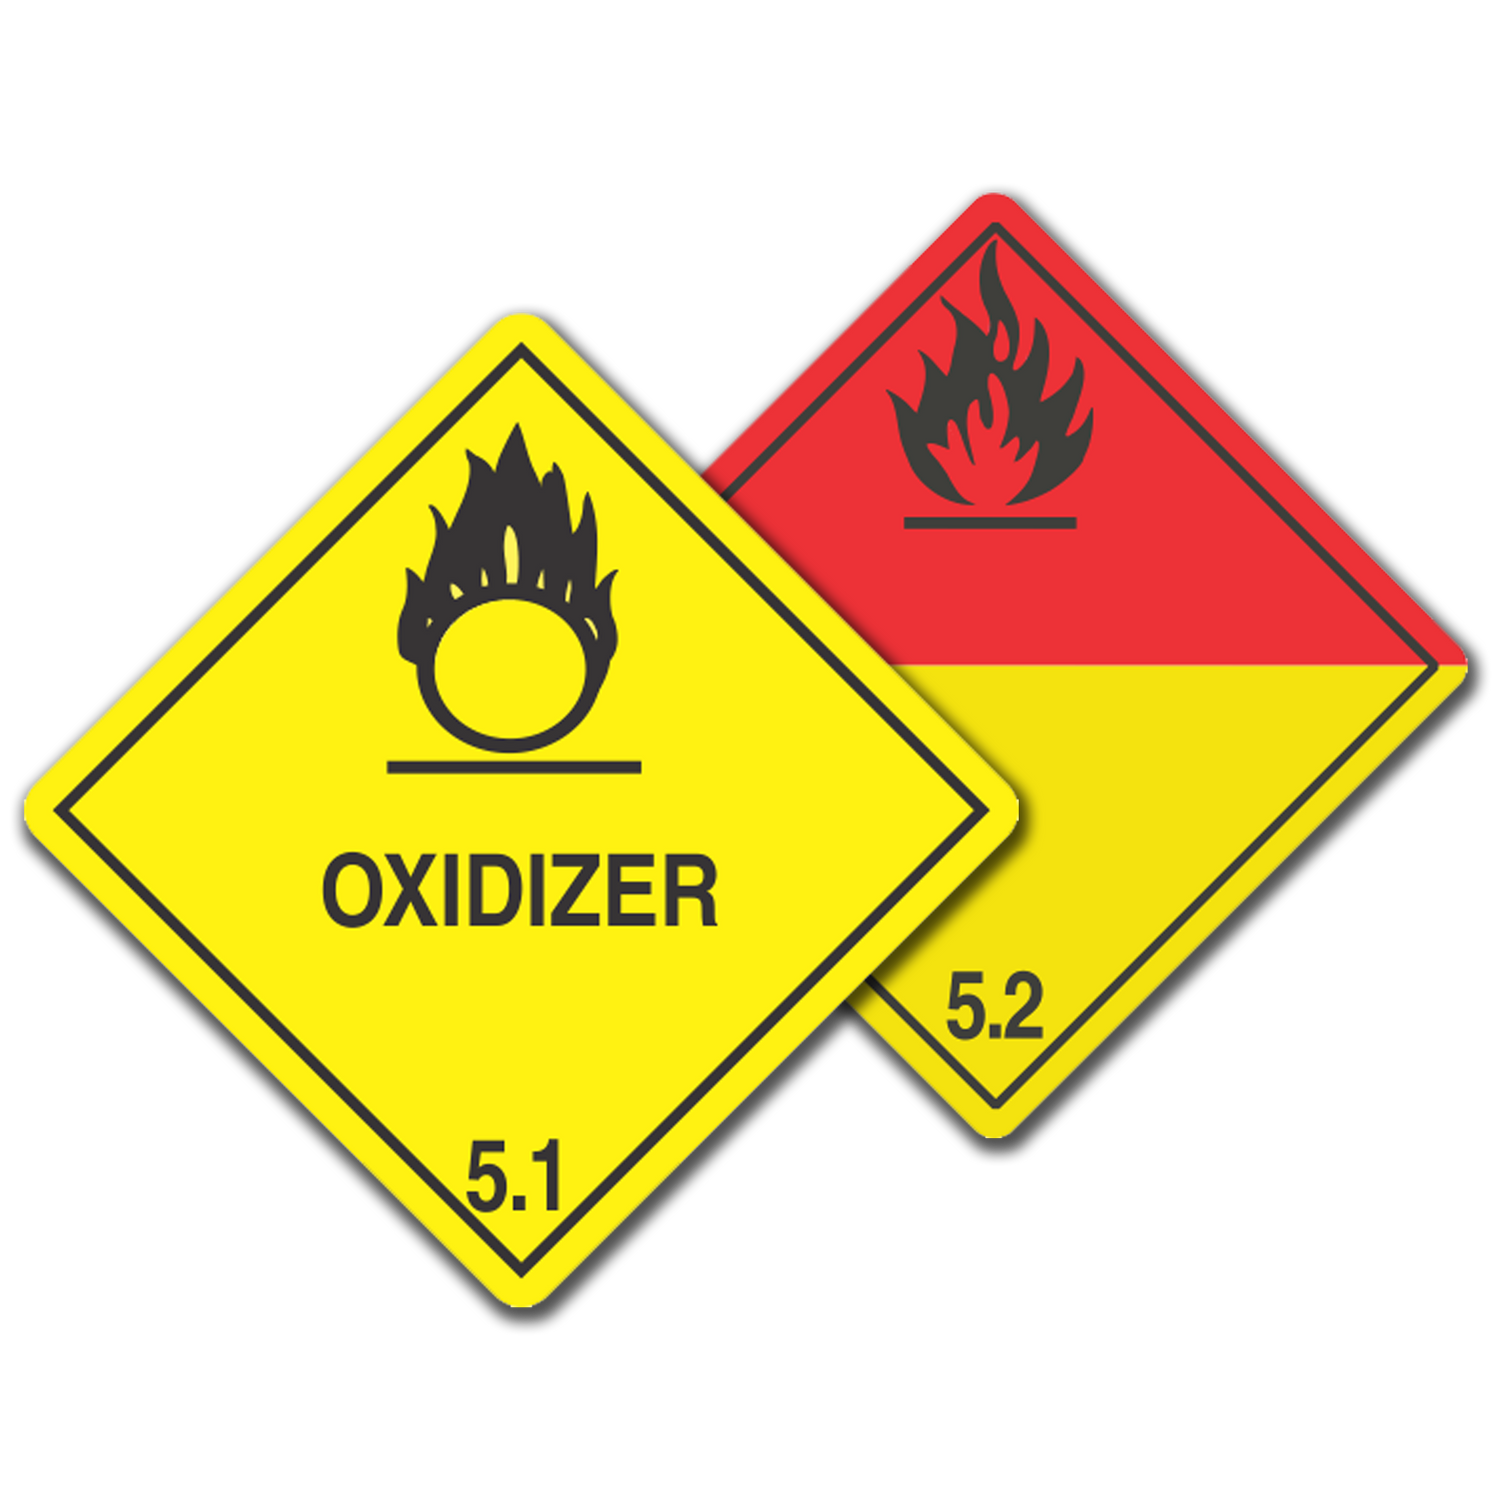 Class 5 - Oxidizing Substances, UN Dangerous Goods